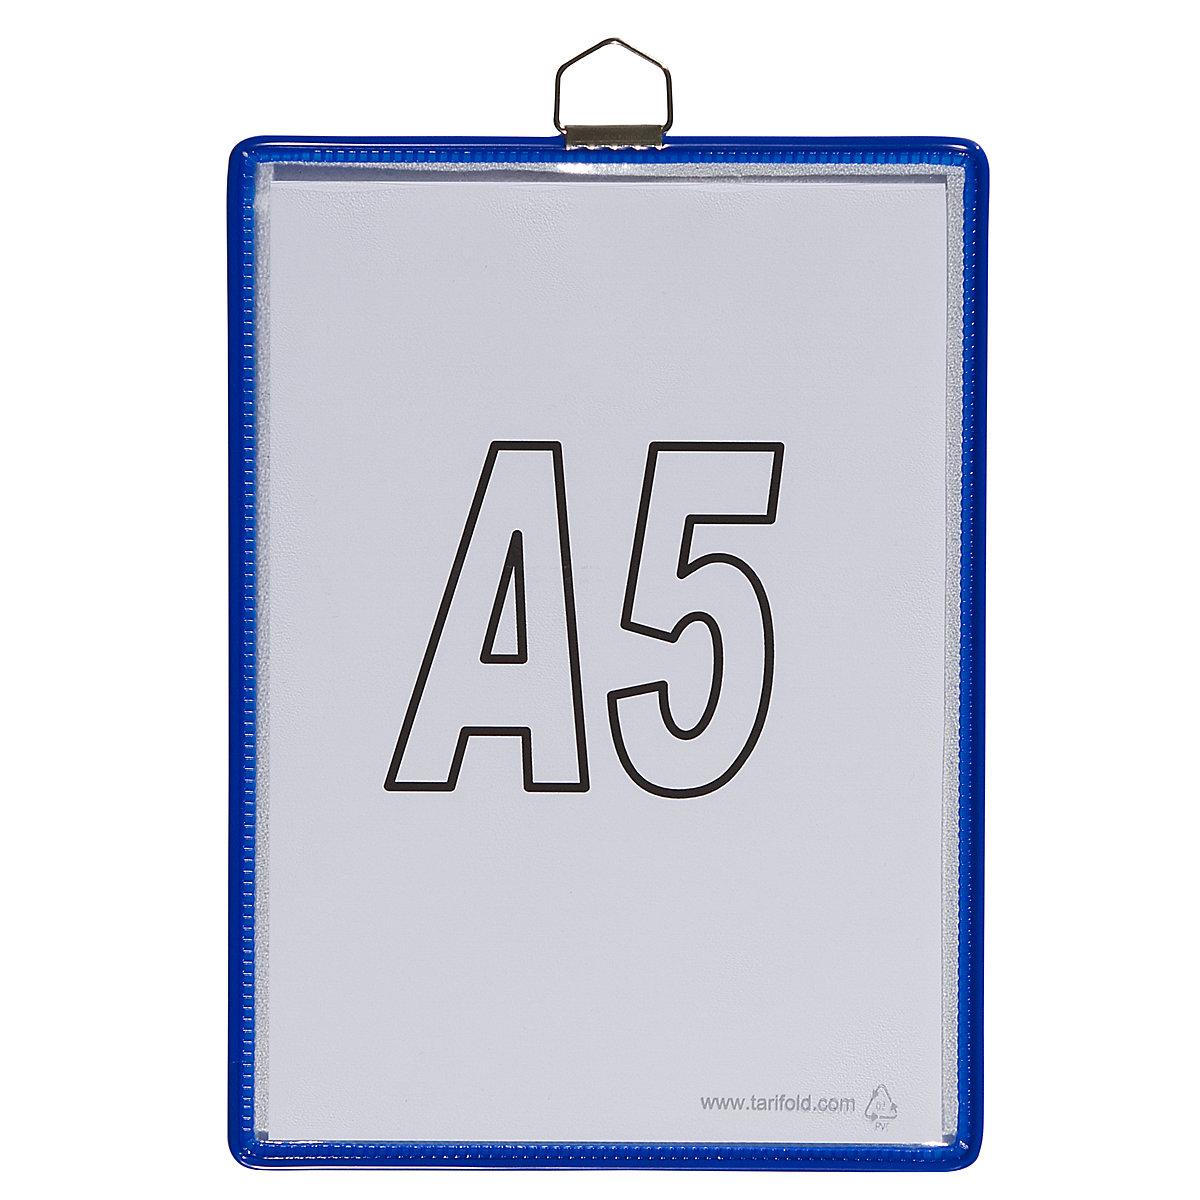 Buzunar transparent suspendabil – Tarifold, pentru format DIN A5, albastru, amb. 10 buc.-3